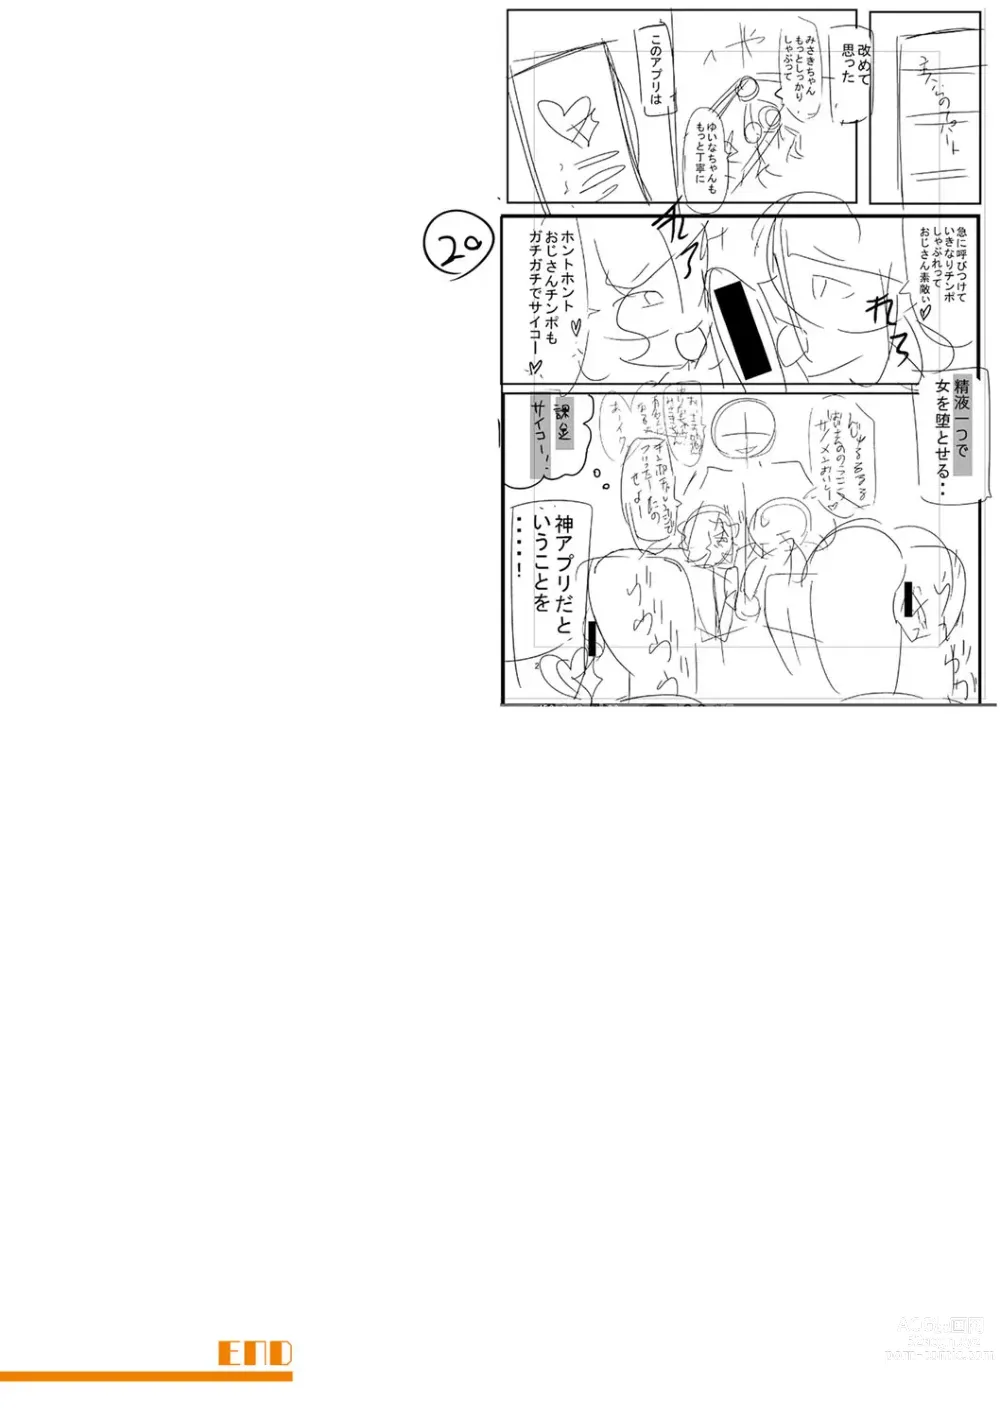 Page 303 of manga Dou shiyou! ! Bitchi nomi no harem tsukutchatta! ! ! !